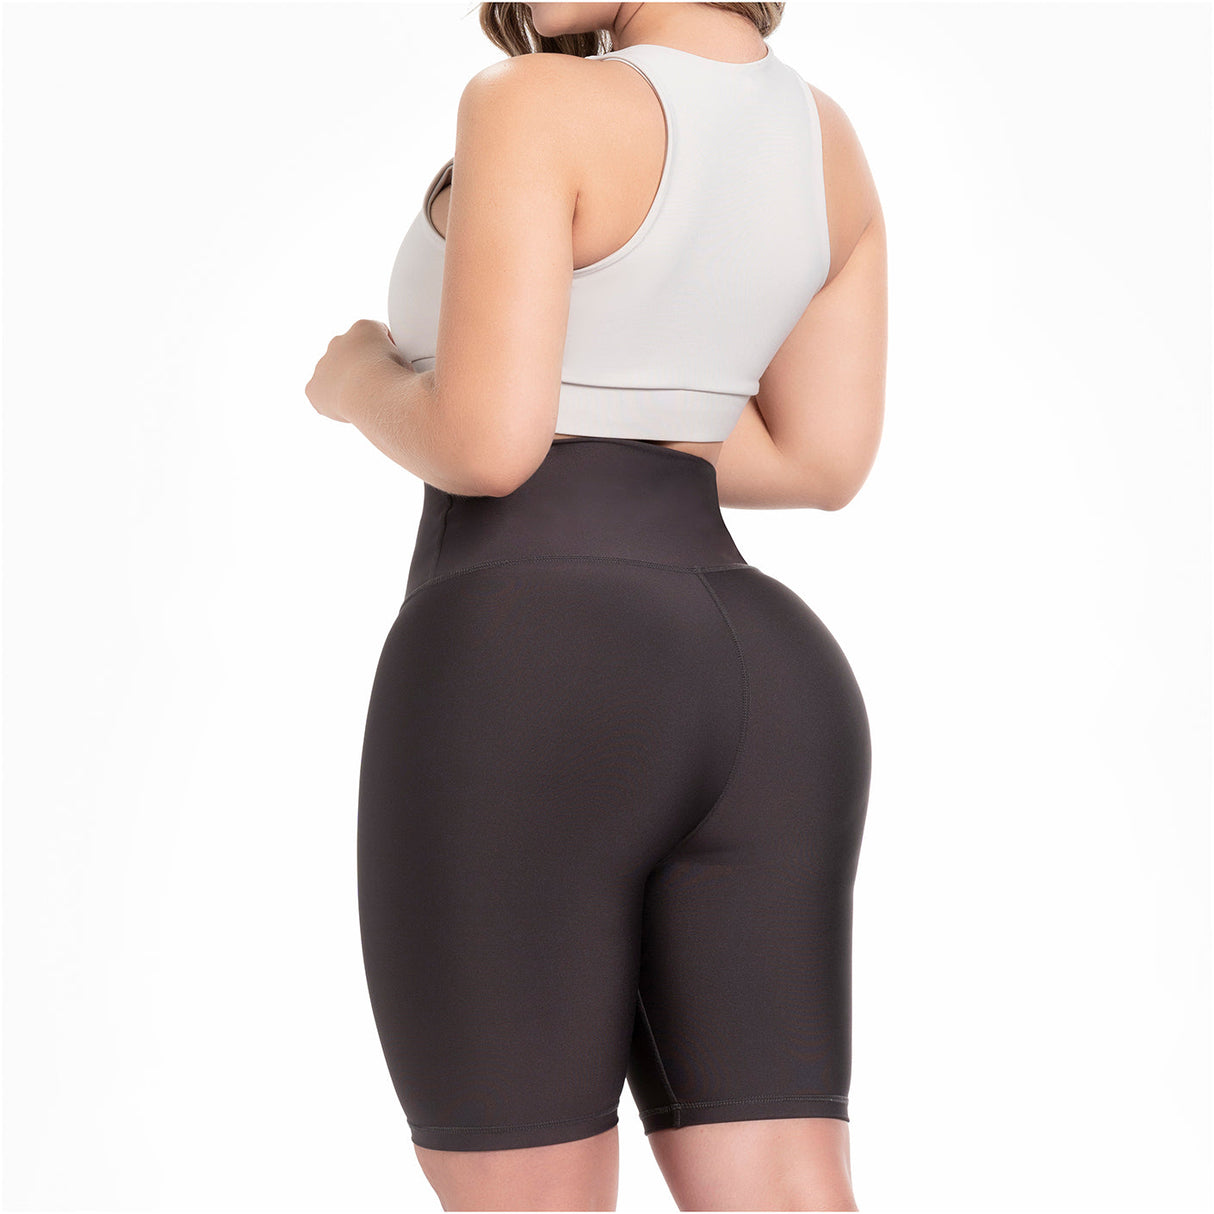 New Arrival Slim Women High Waist Butt Lifter Thigh Neoprene Waist